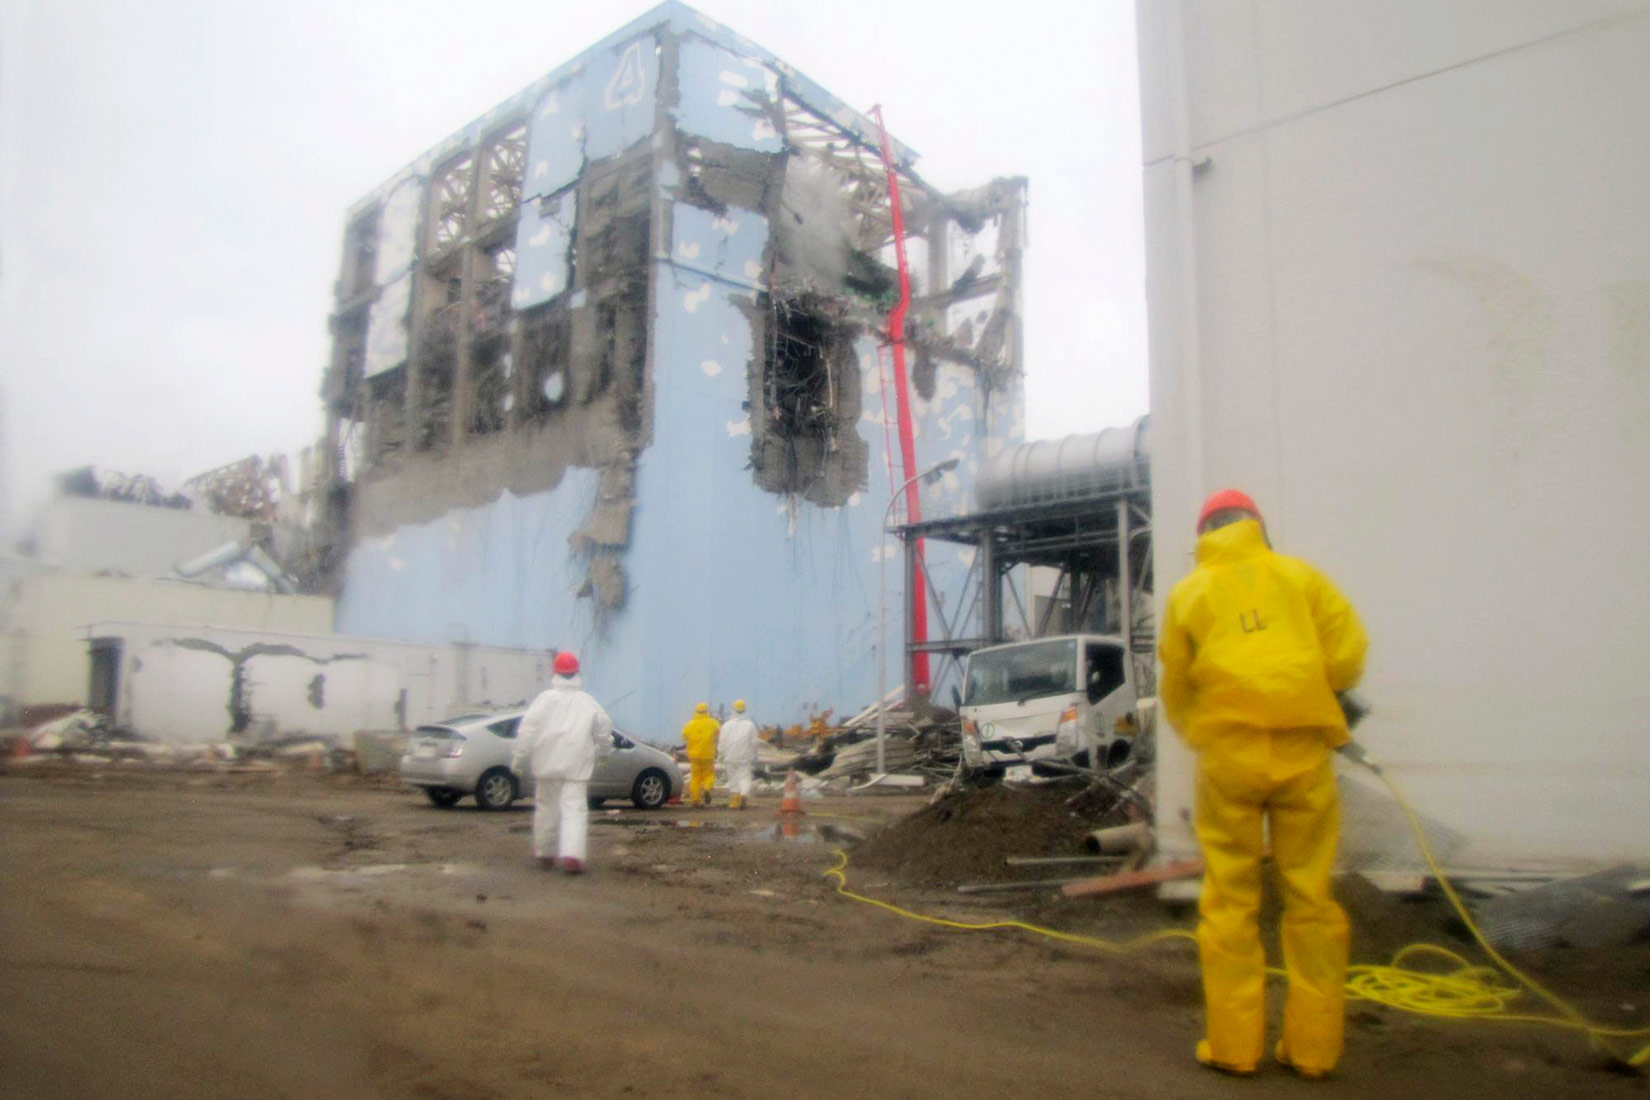 Fotografija prikazuje posljedice nuklearne katastrofe na nuklearnoj elektrani Fukushima Daiichi na japanskoj obali Tihog oceana. Fotografija prikazuje oštećenja na zgradi u kojoj se nalazi nuklearni reaktor. Vide se veliki otvori nastale pod utjecajem plimnoga vala. Ispred zgrada nalaze se radnici odjeveni u zaštitnu opremu, u prvom planu je radnik u žutom zaštitnom odijelu., u drugom planu je radnik u bijelom zaštitnom odijelu.